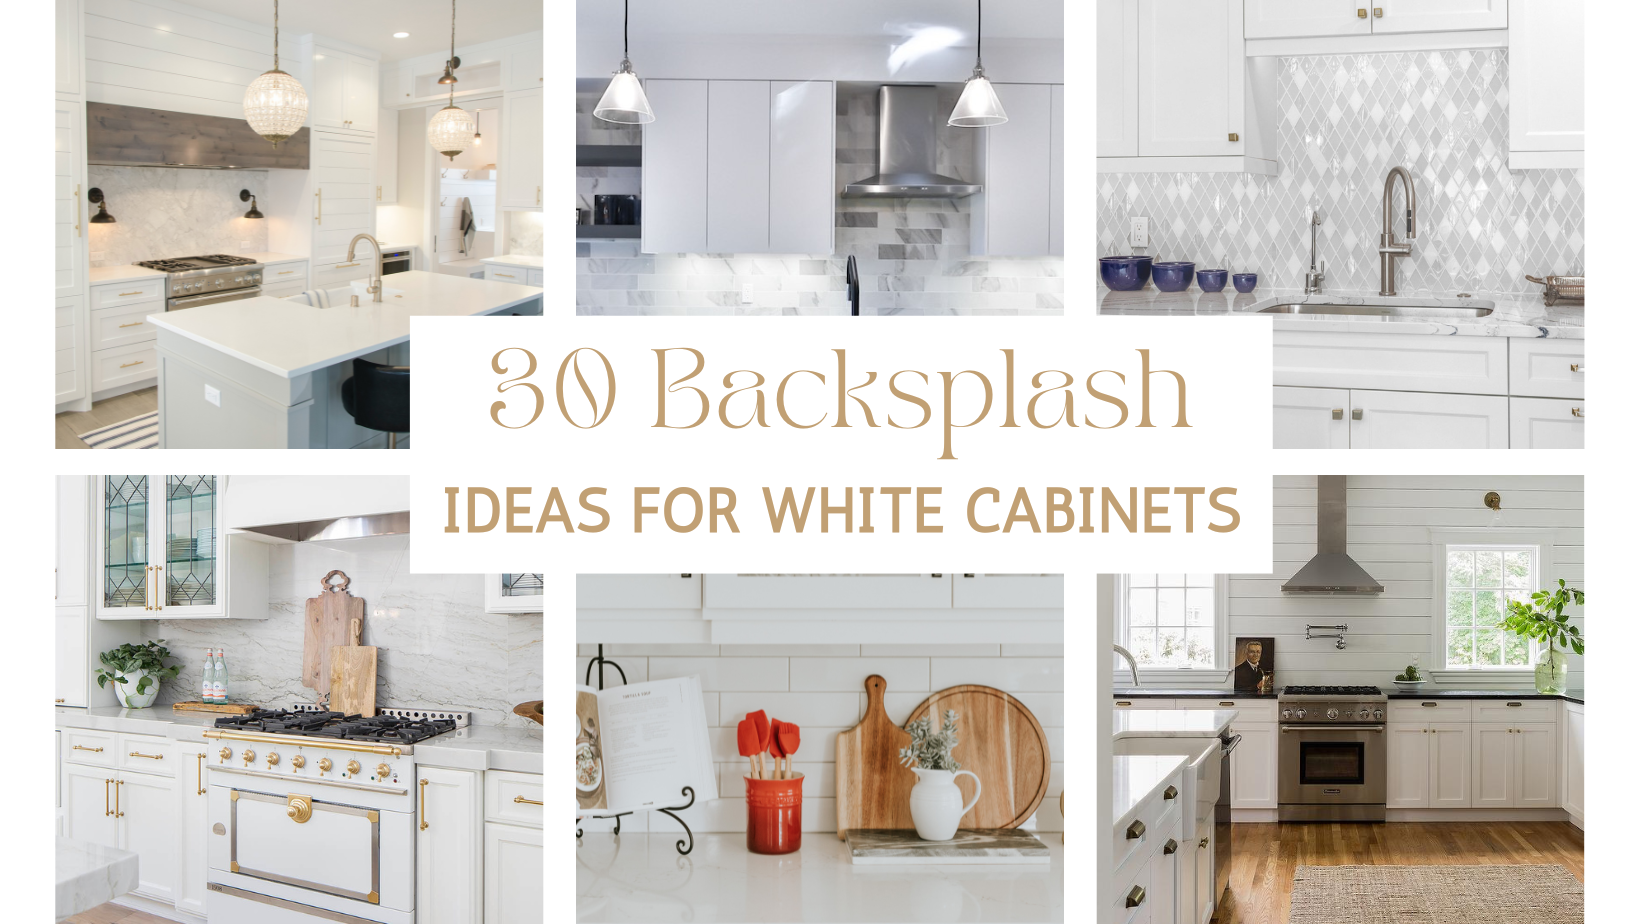 16 Unique White Kitchen Backsplash Ideas